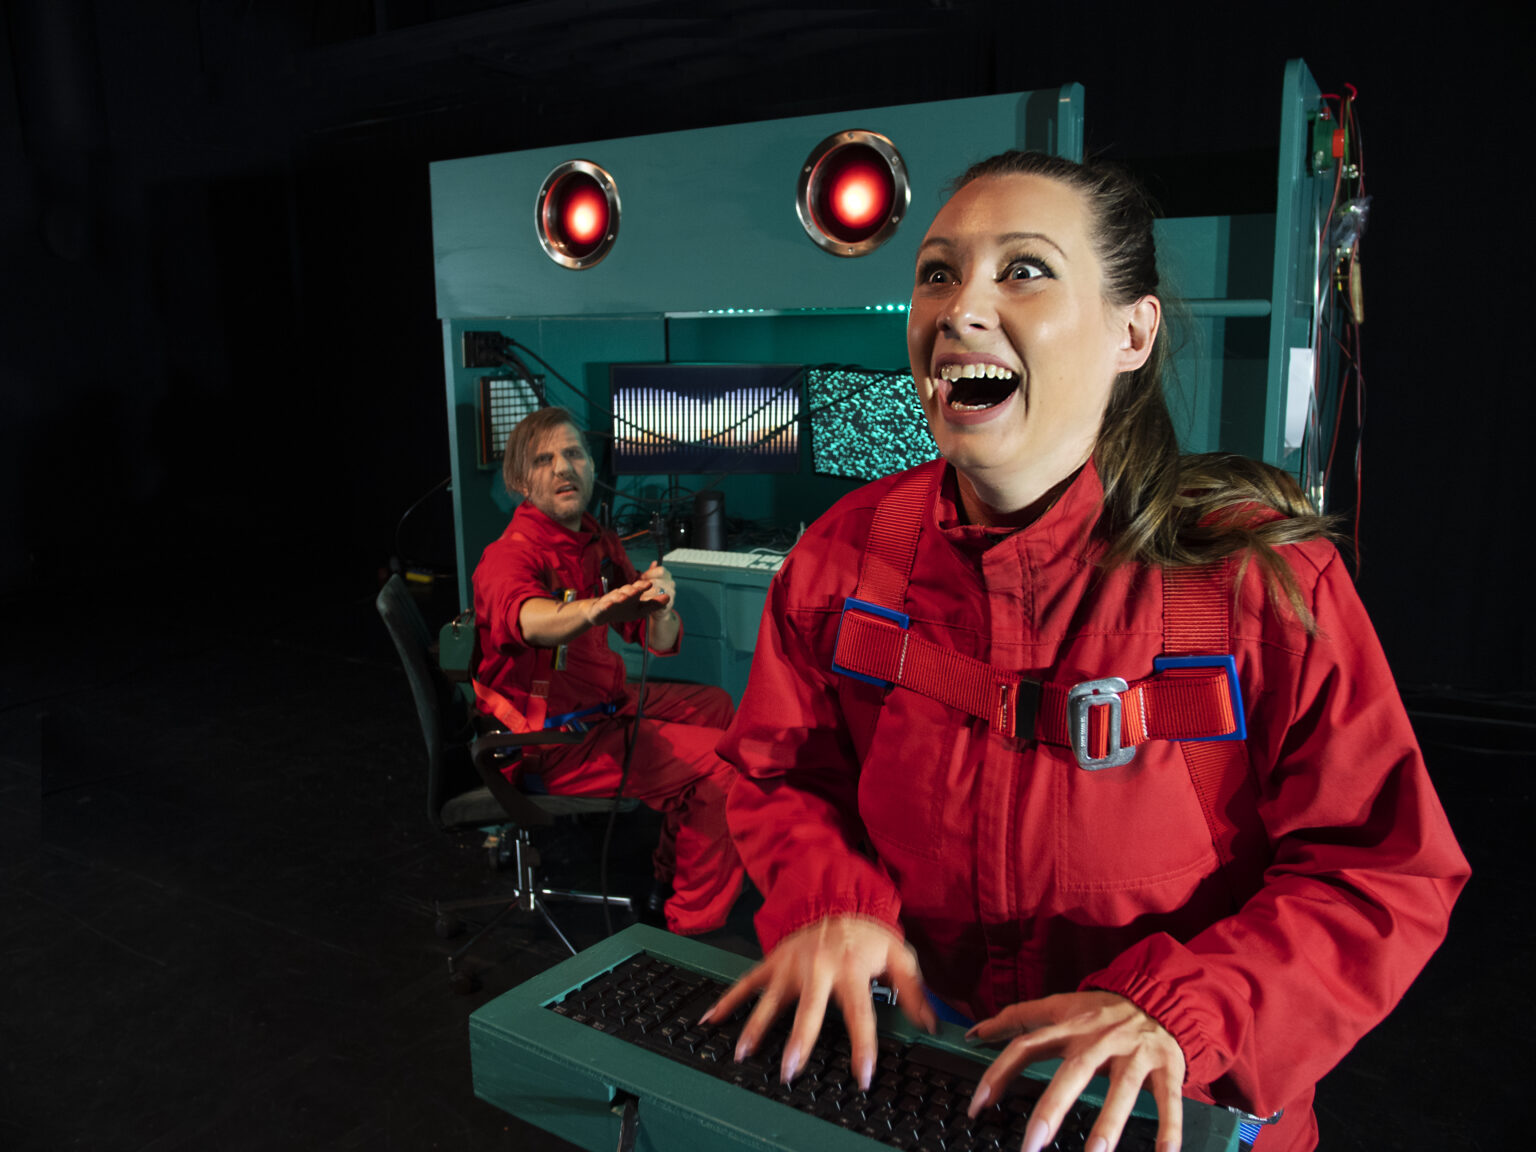 I förgrunden syns en person med röd arbetsoverall, som ser glad ut och sitter med båda händerna på ett tangentbord. I bakgrunden sitter en annan person med röda arbetskläder, vid en grönblå maskin med två lysande lampor som ser ut som ögon.